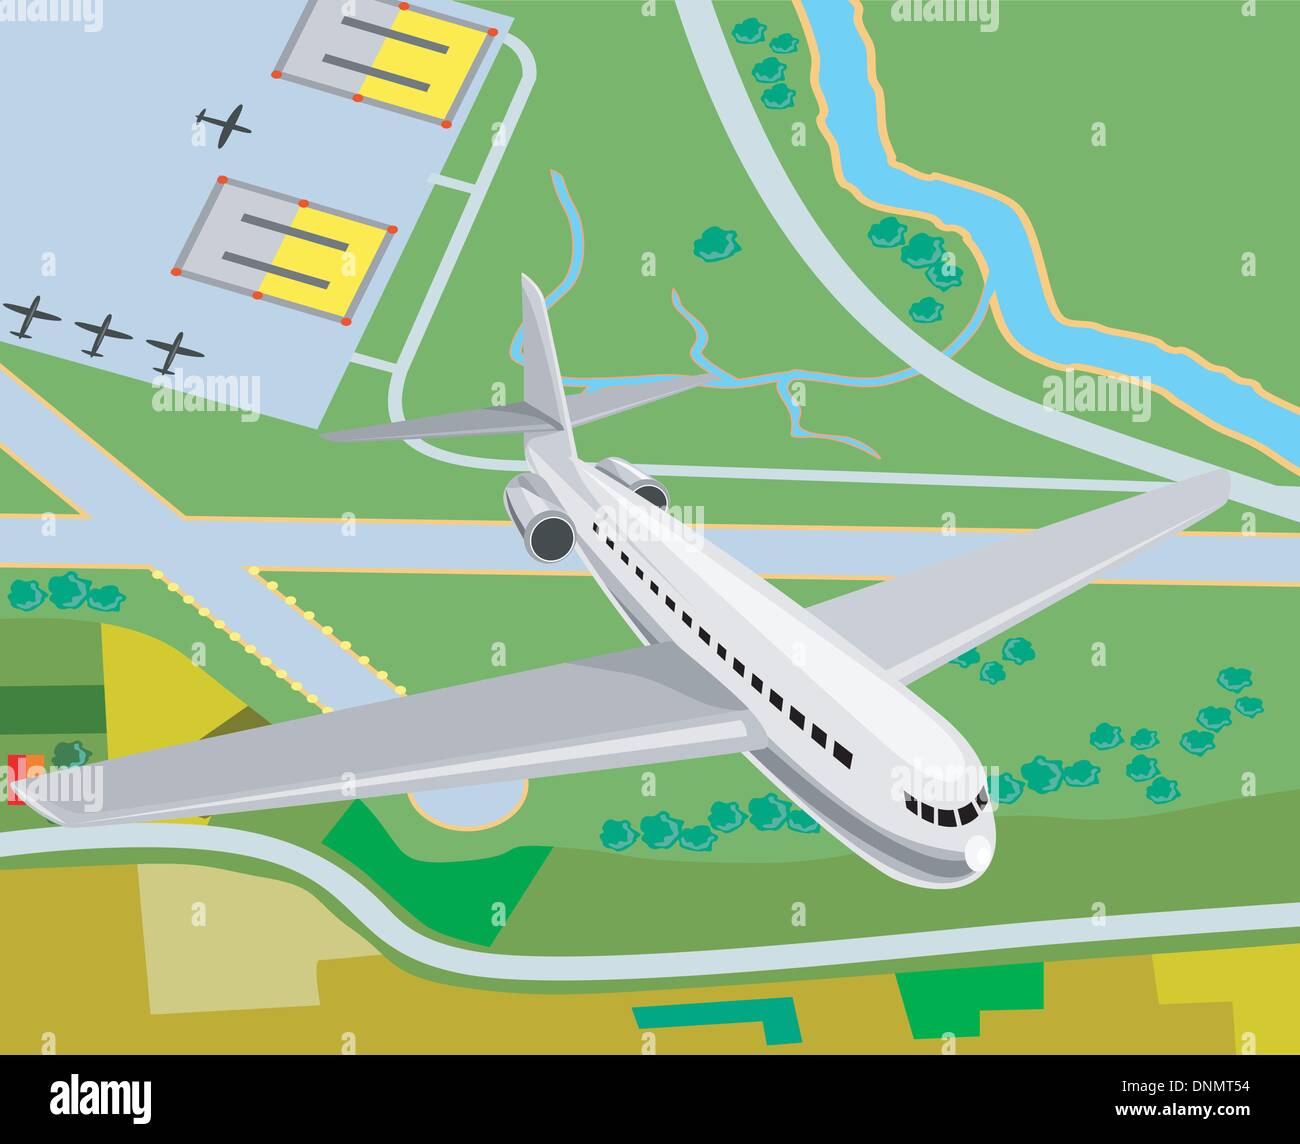 Ilustración de un avión comercial del jet airliner vista aérea. Ilustración del Vector